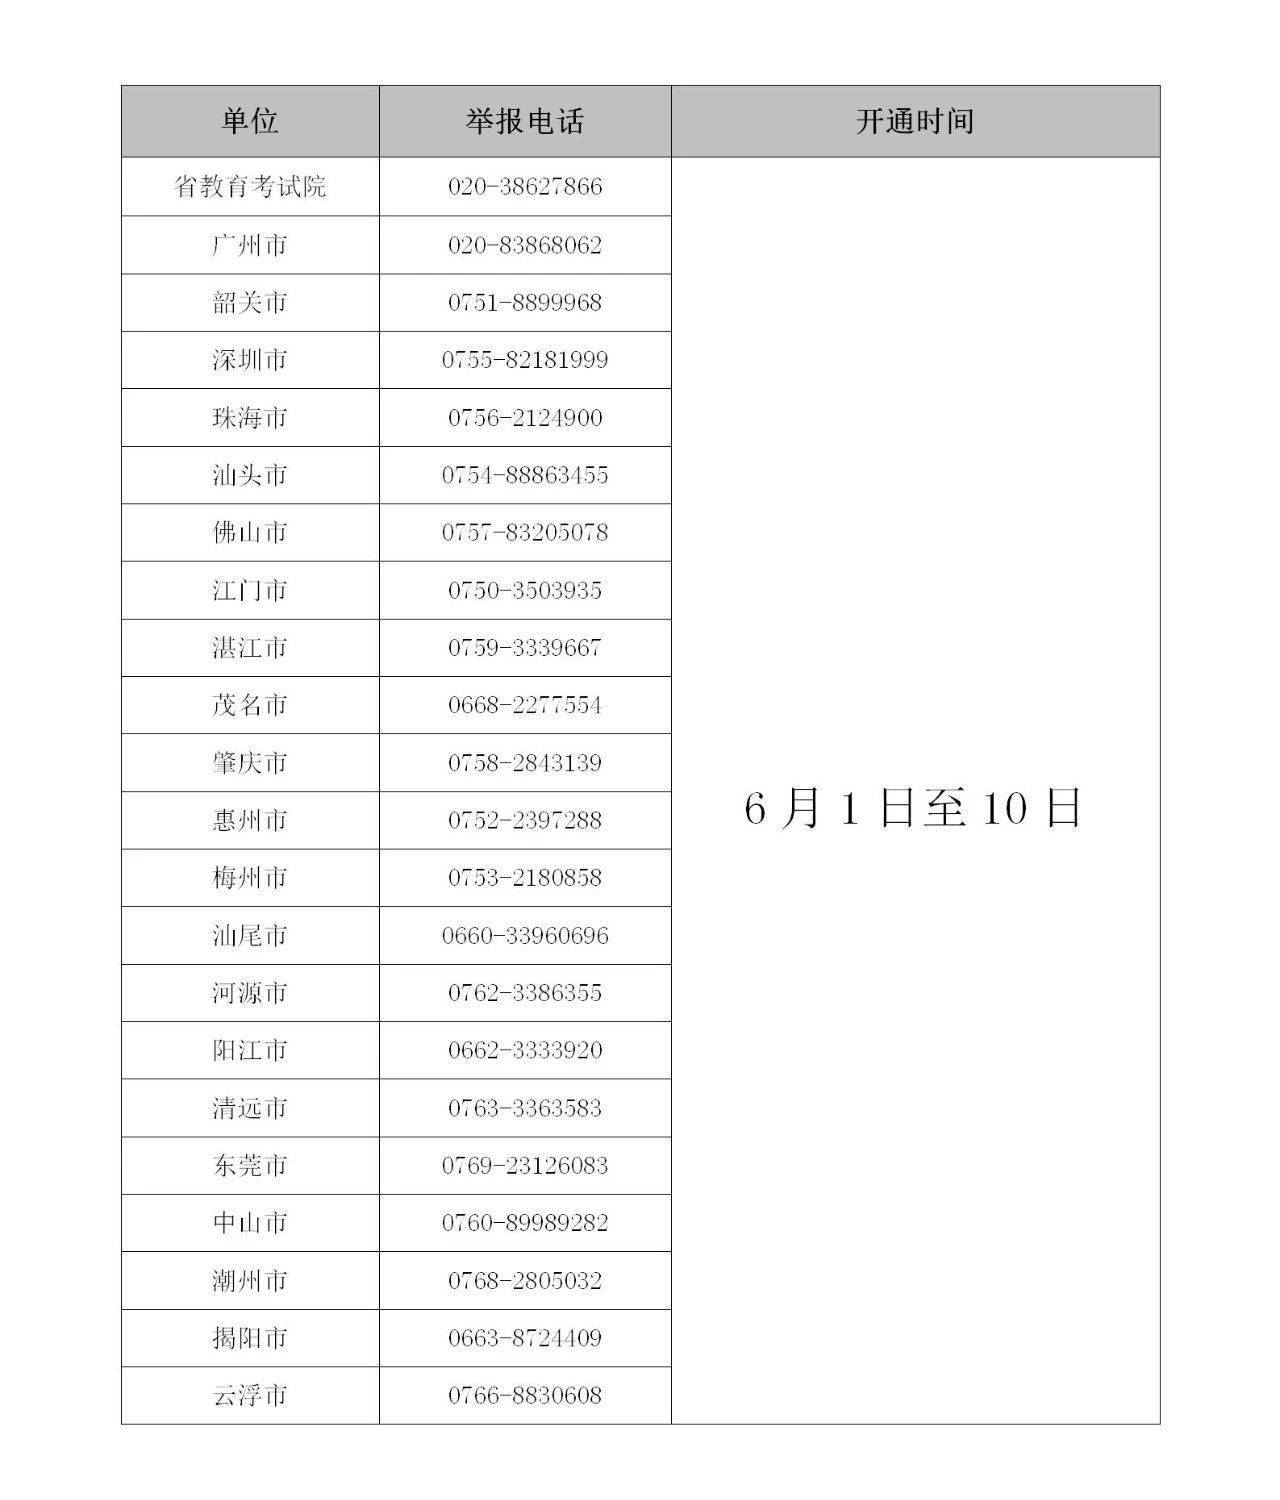 教育考试院公布了广东省教育考试院及各地市普通高考违规违法举报电话